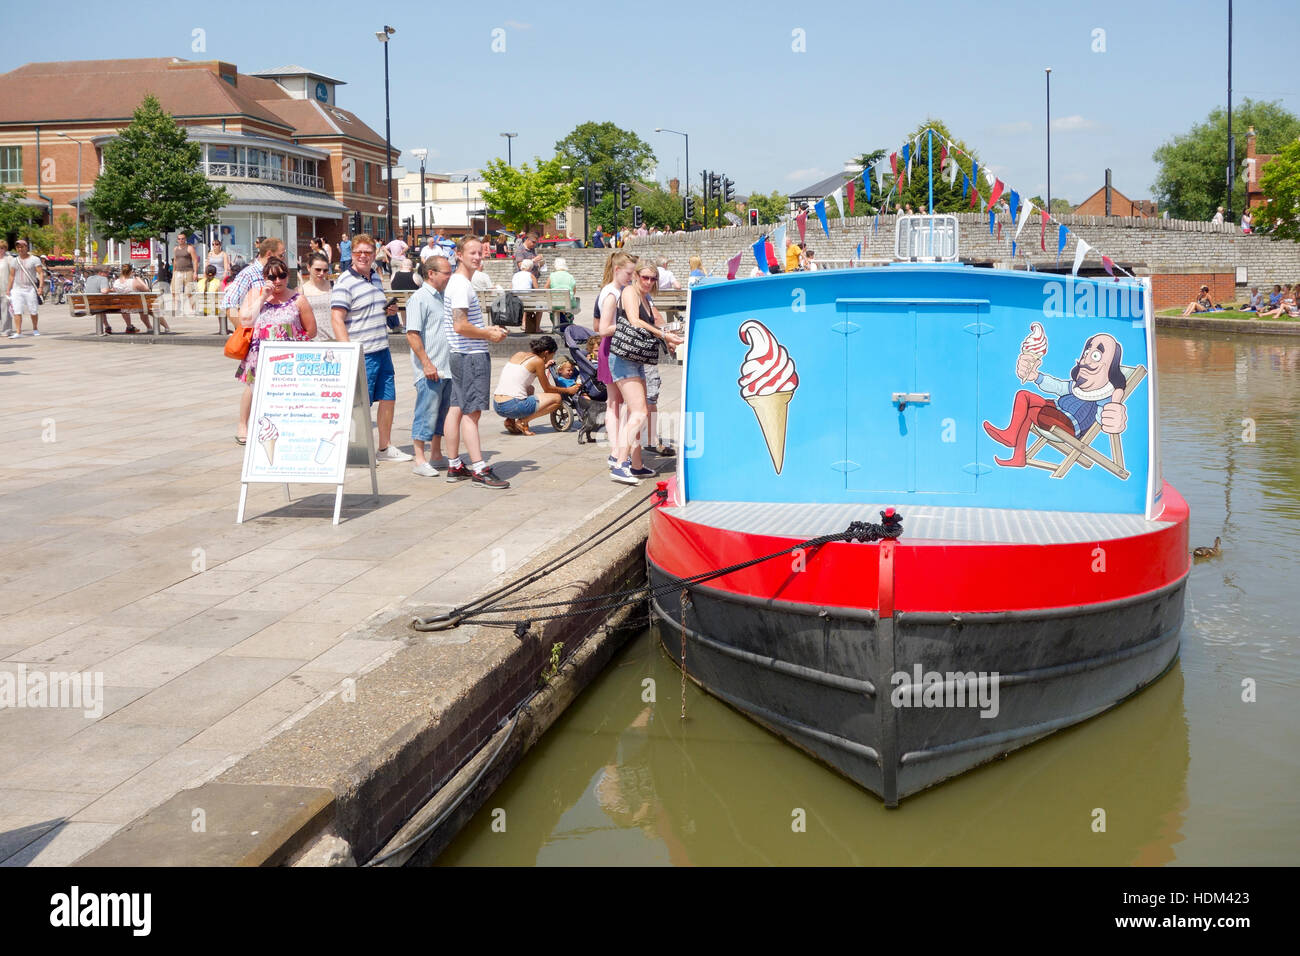 Les gens qui achètent des glaces d'un glacier flottant sur la rivière Avon, Stratford-upon-Avon, Warwickshire, England, UK Banque D'Images